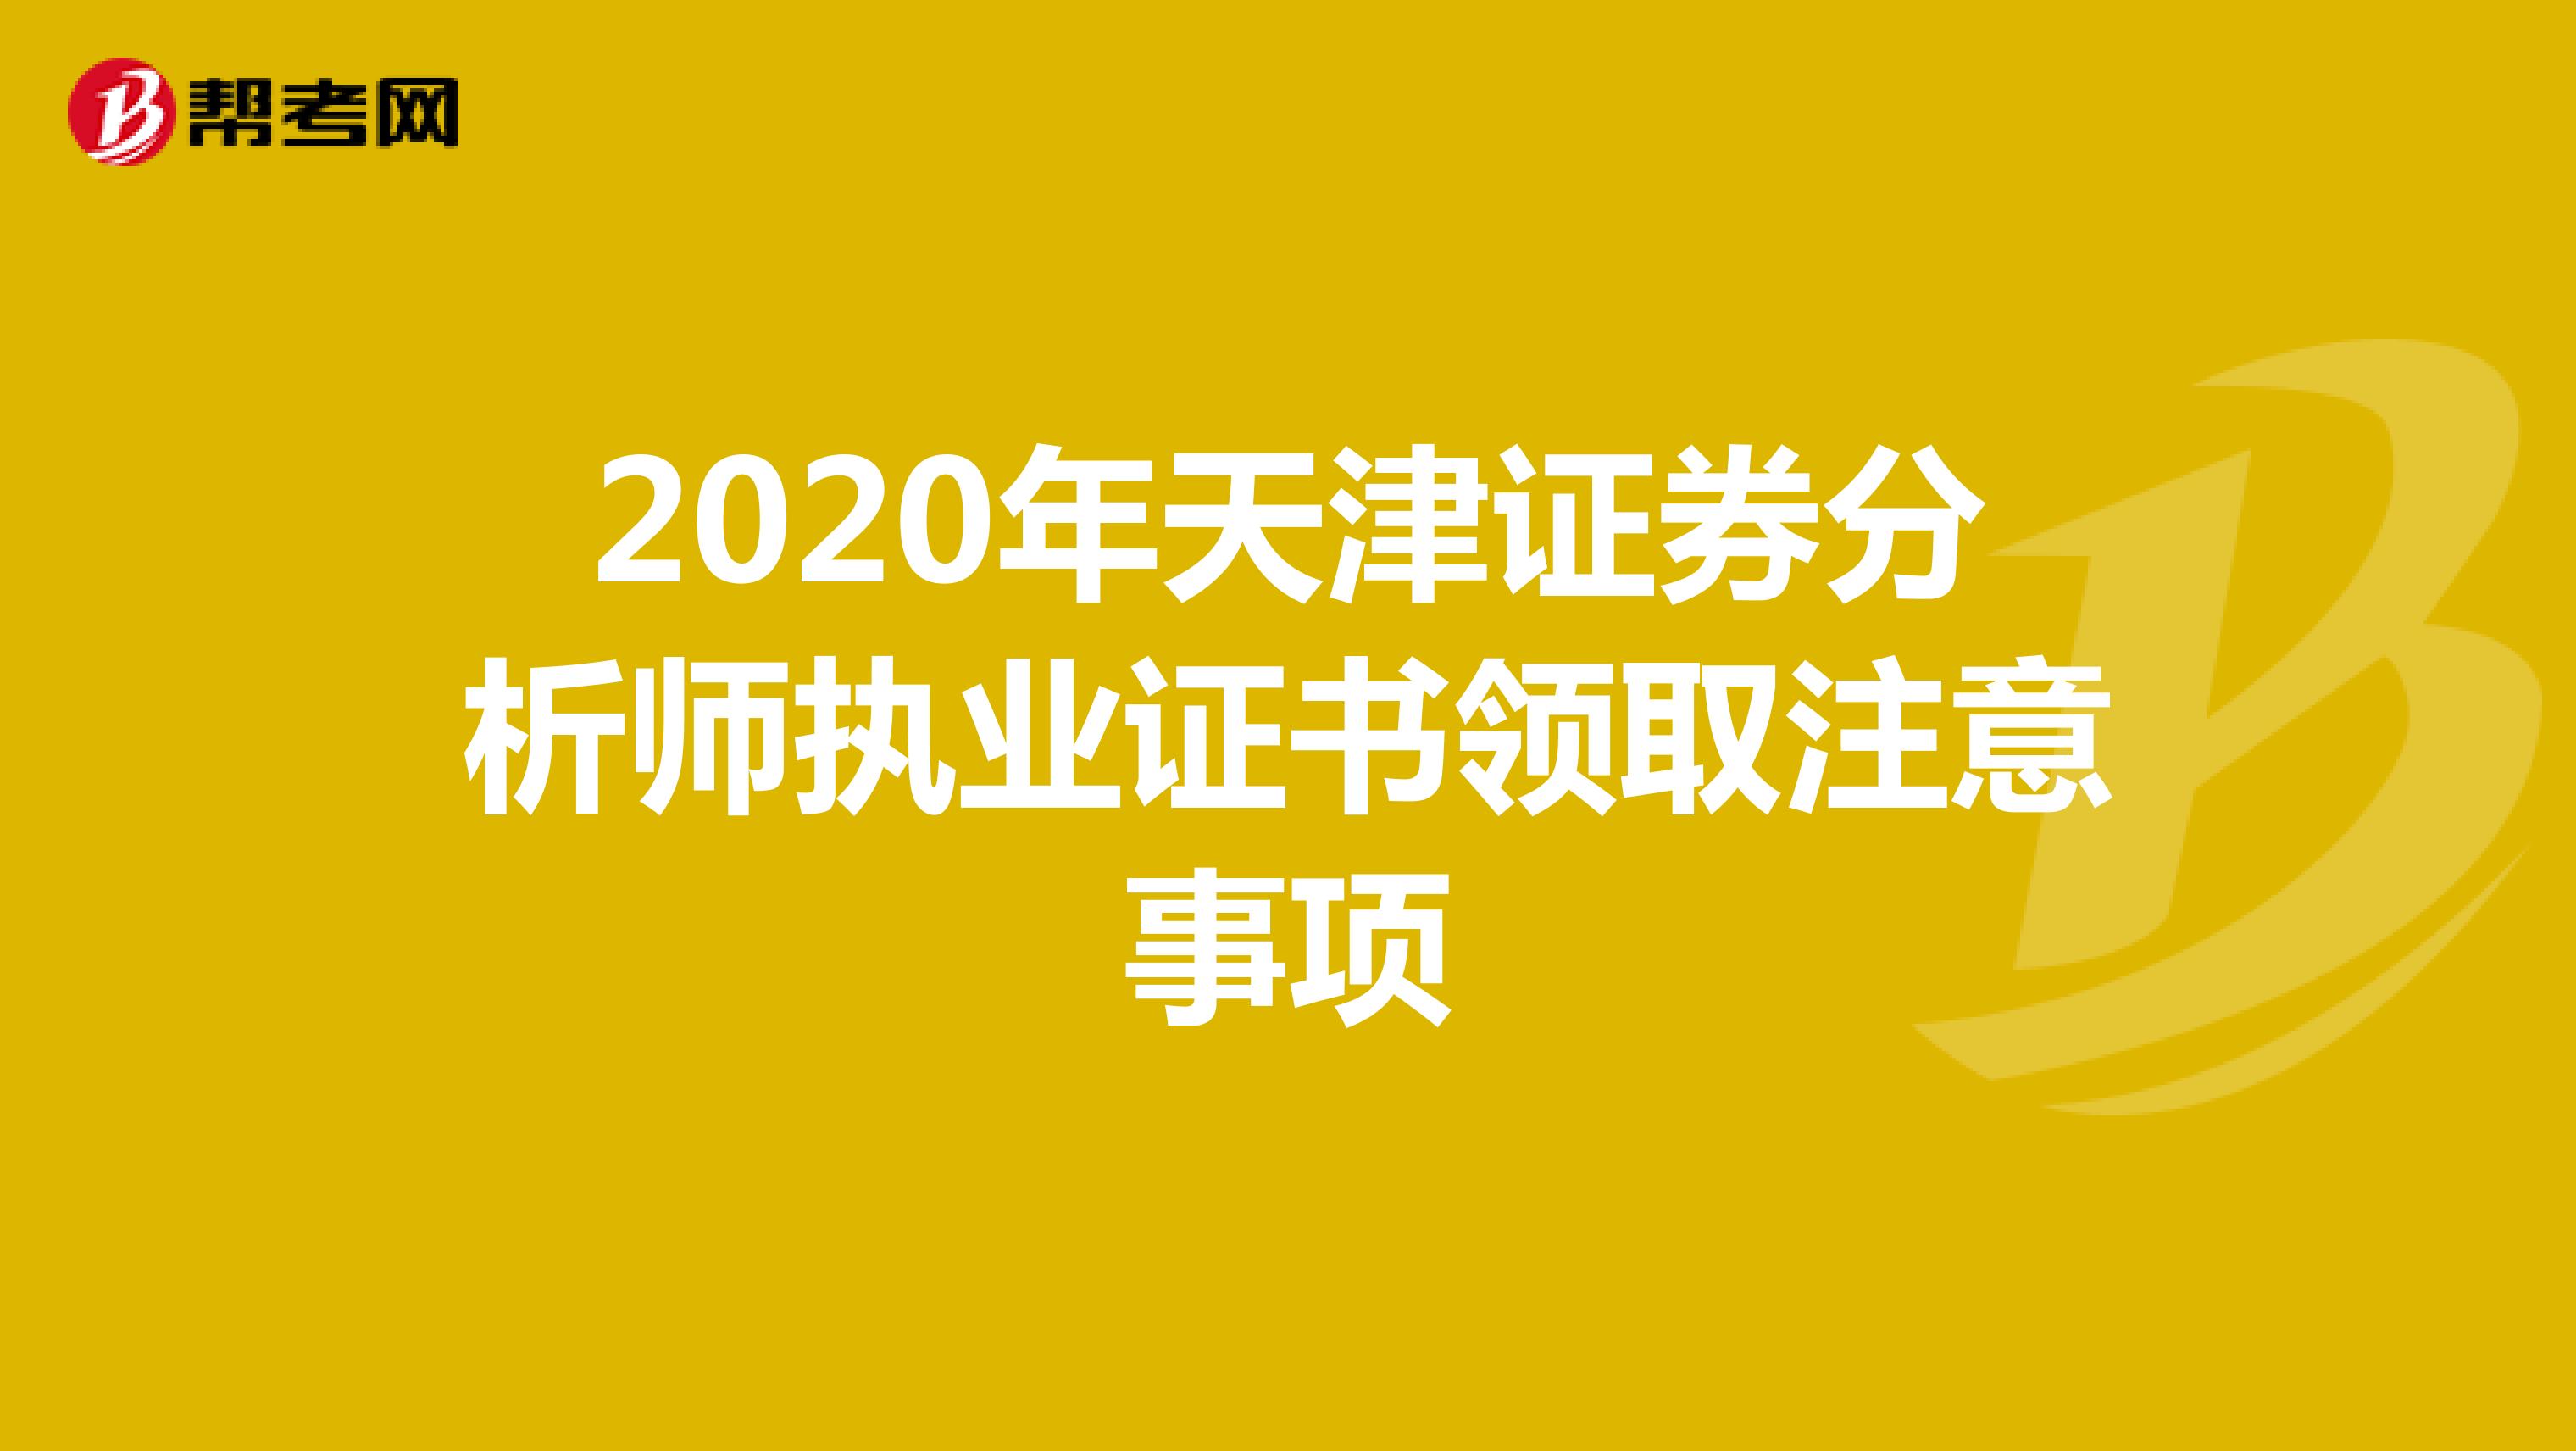 2020年天津证券分析师执业证书领取注意事项